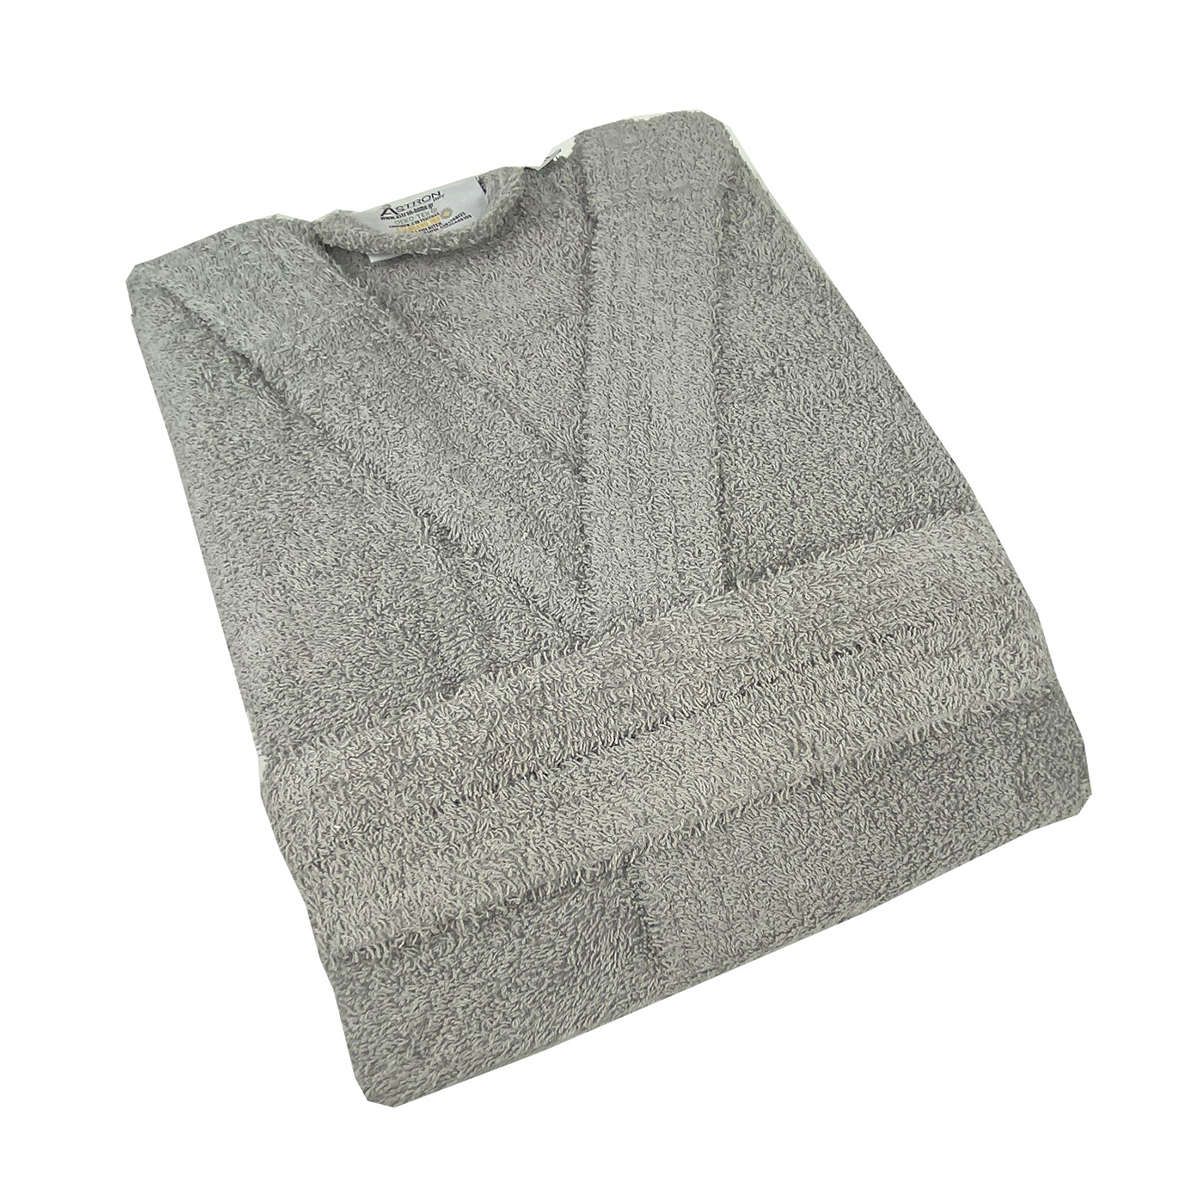 Μπουρνούζι με κουκούλα grey astron - Large